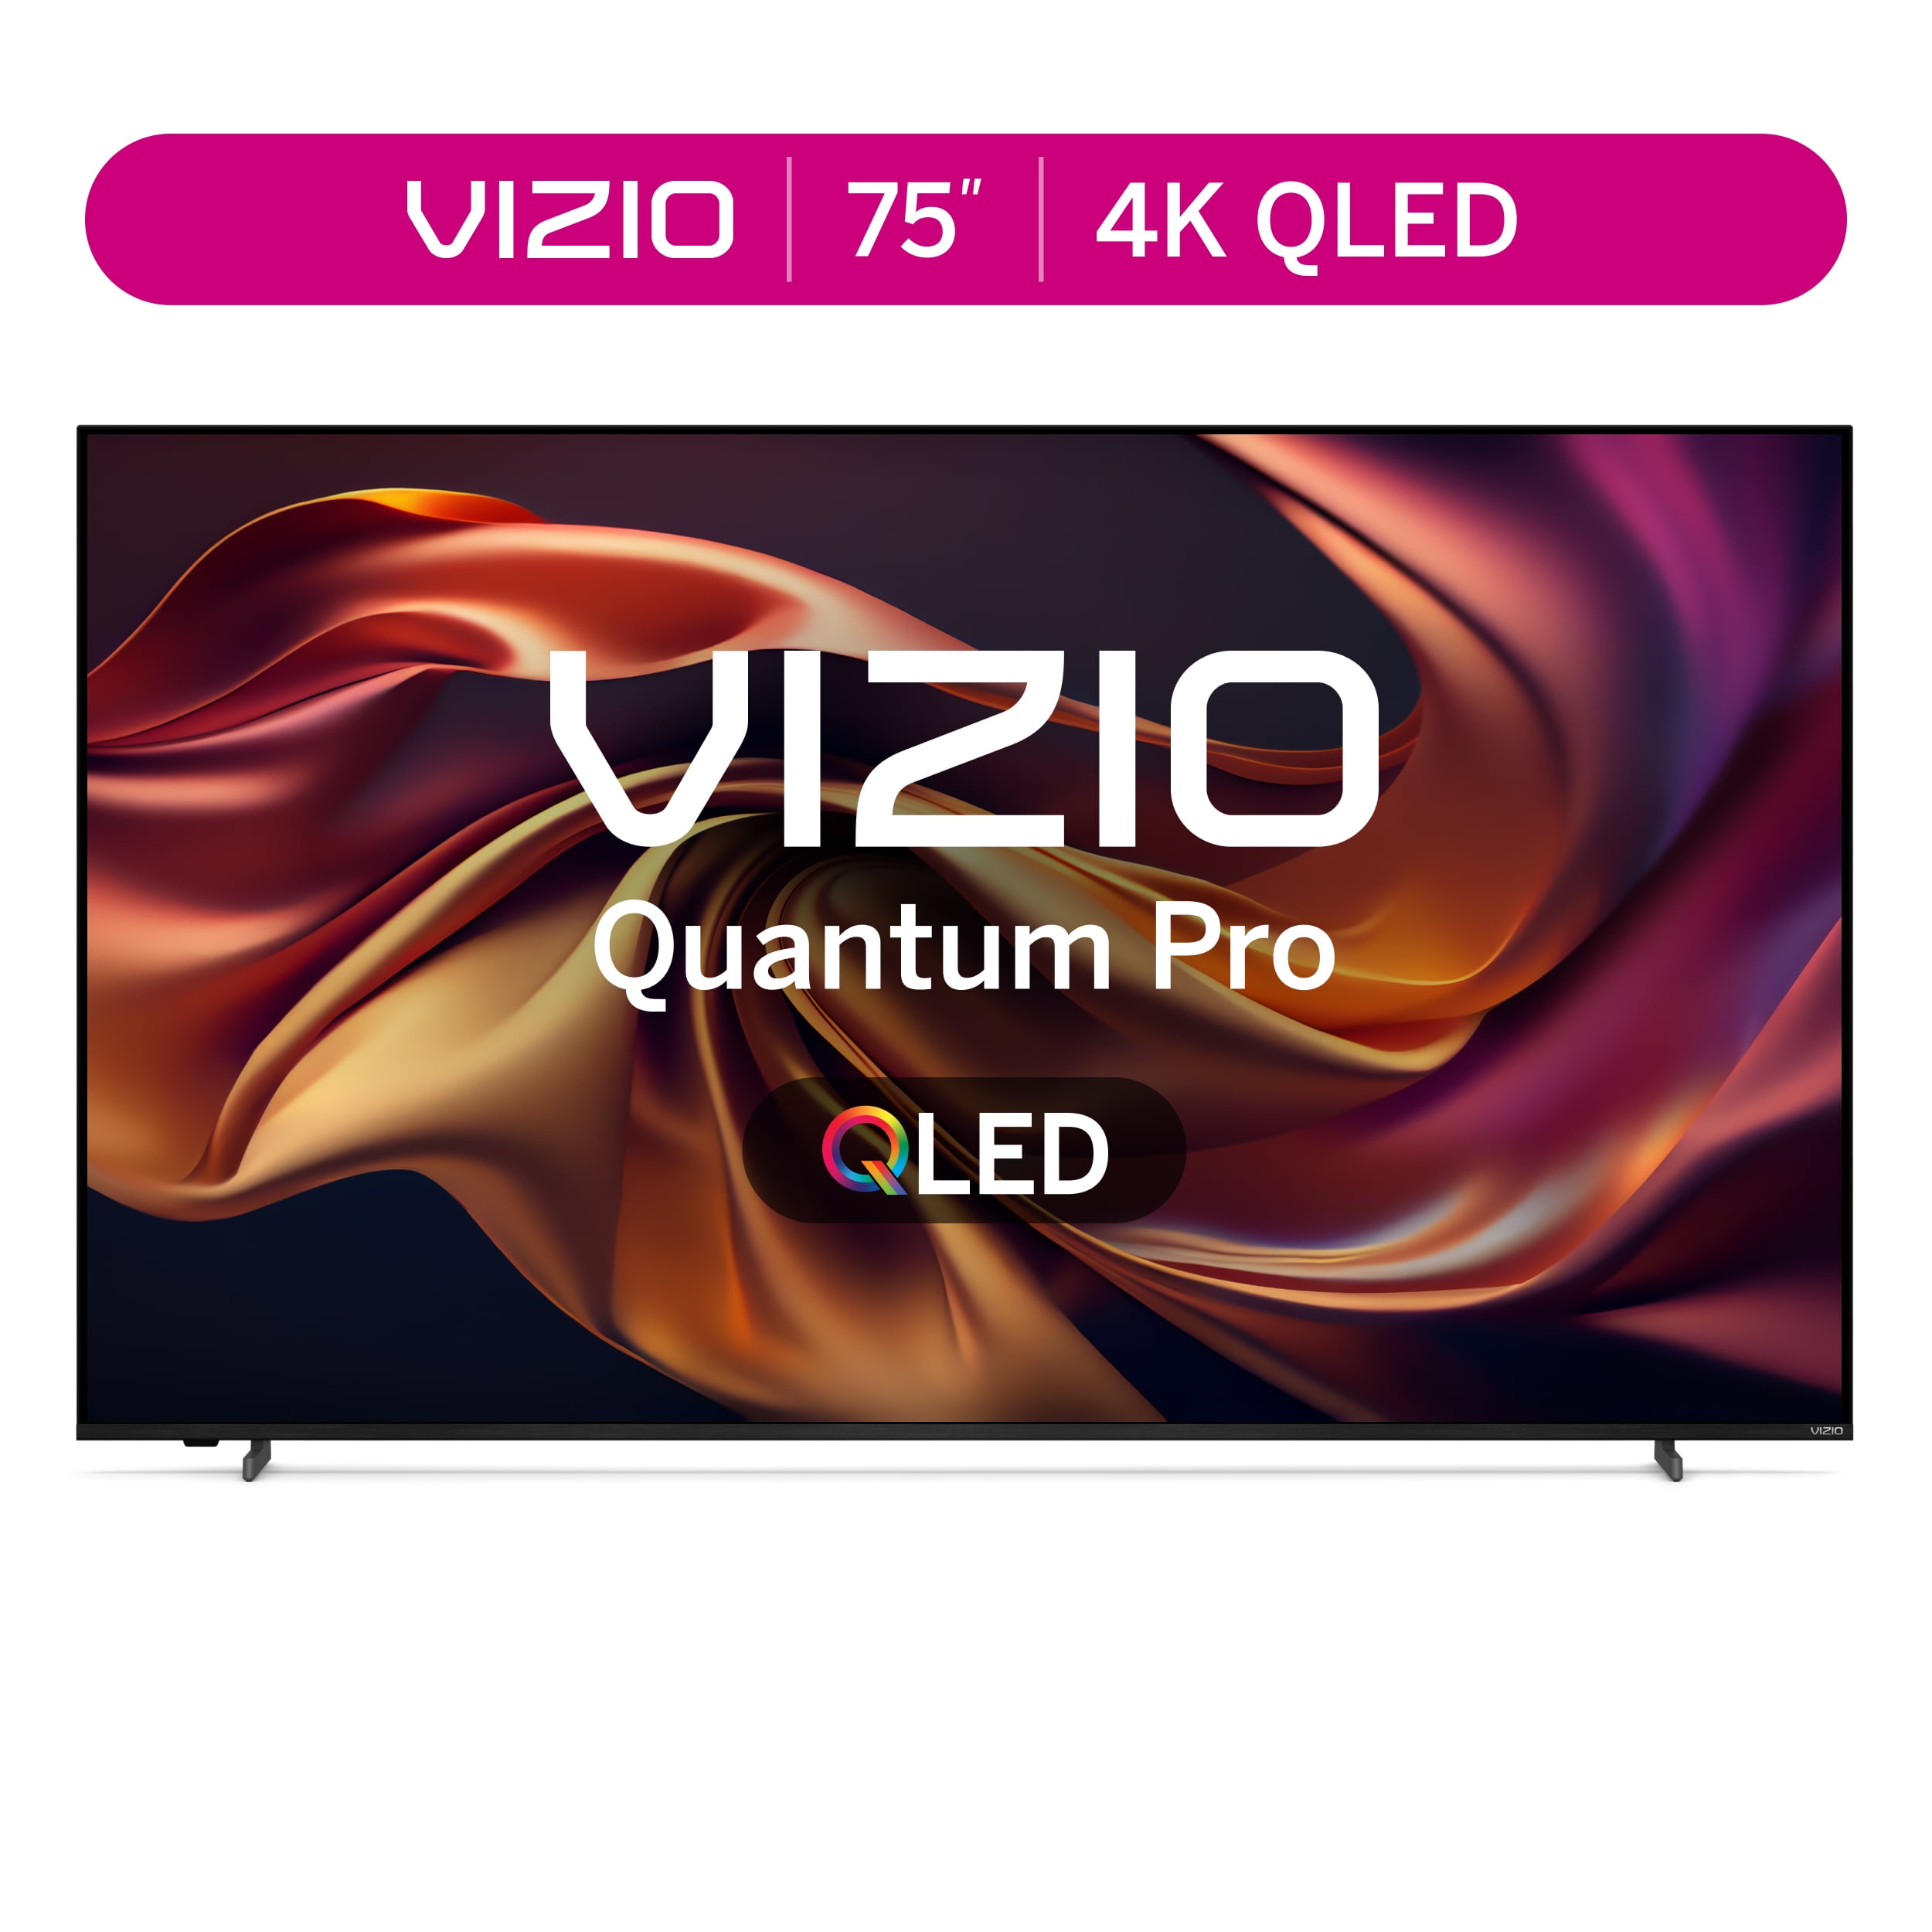 120Hz HDTV Enabled TVs for sale